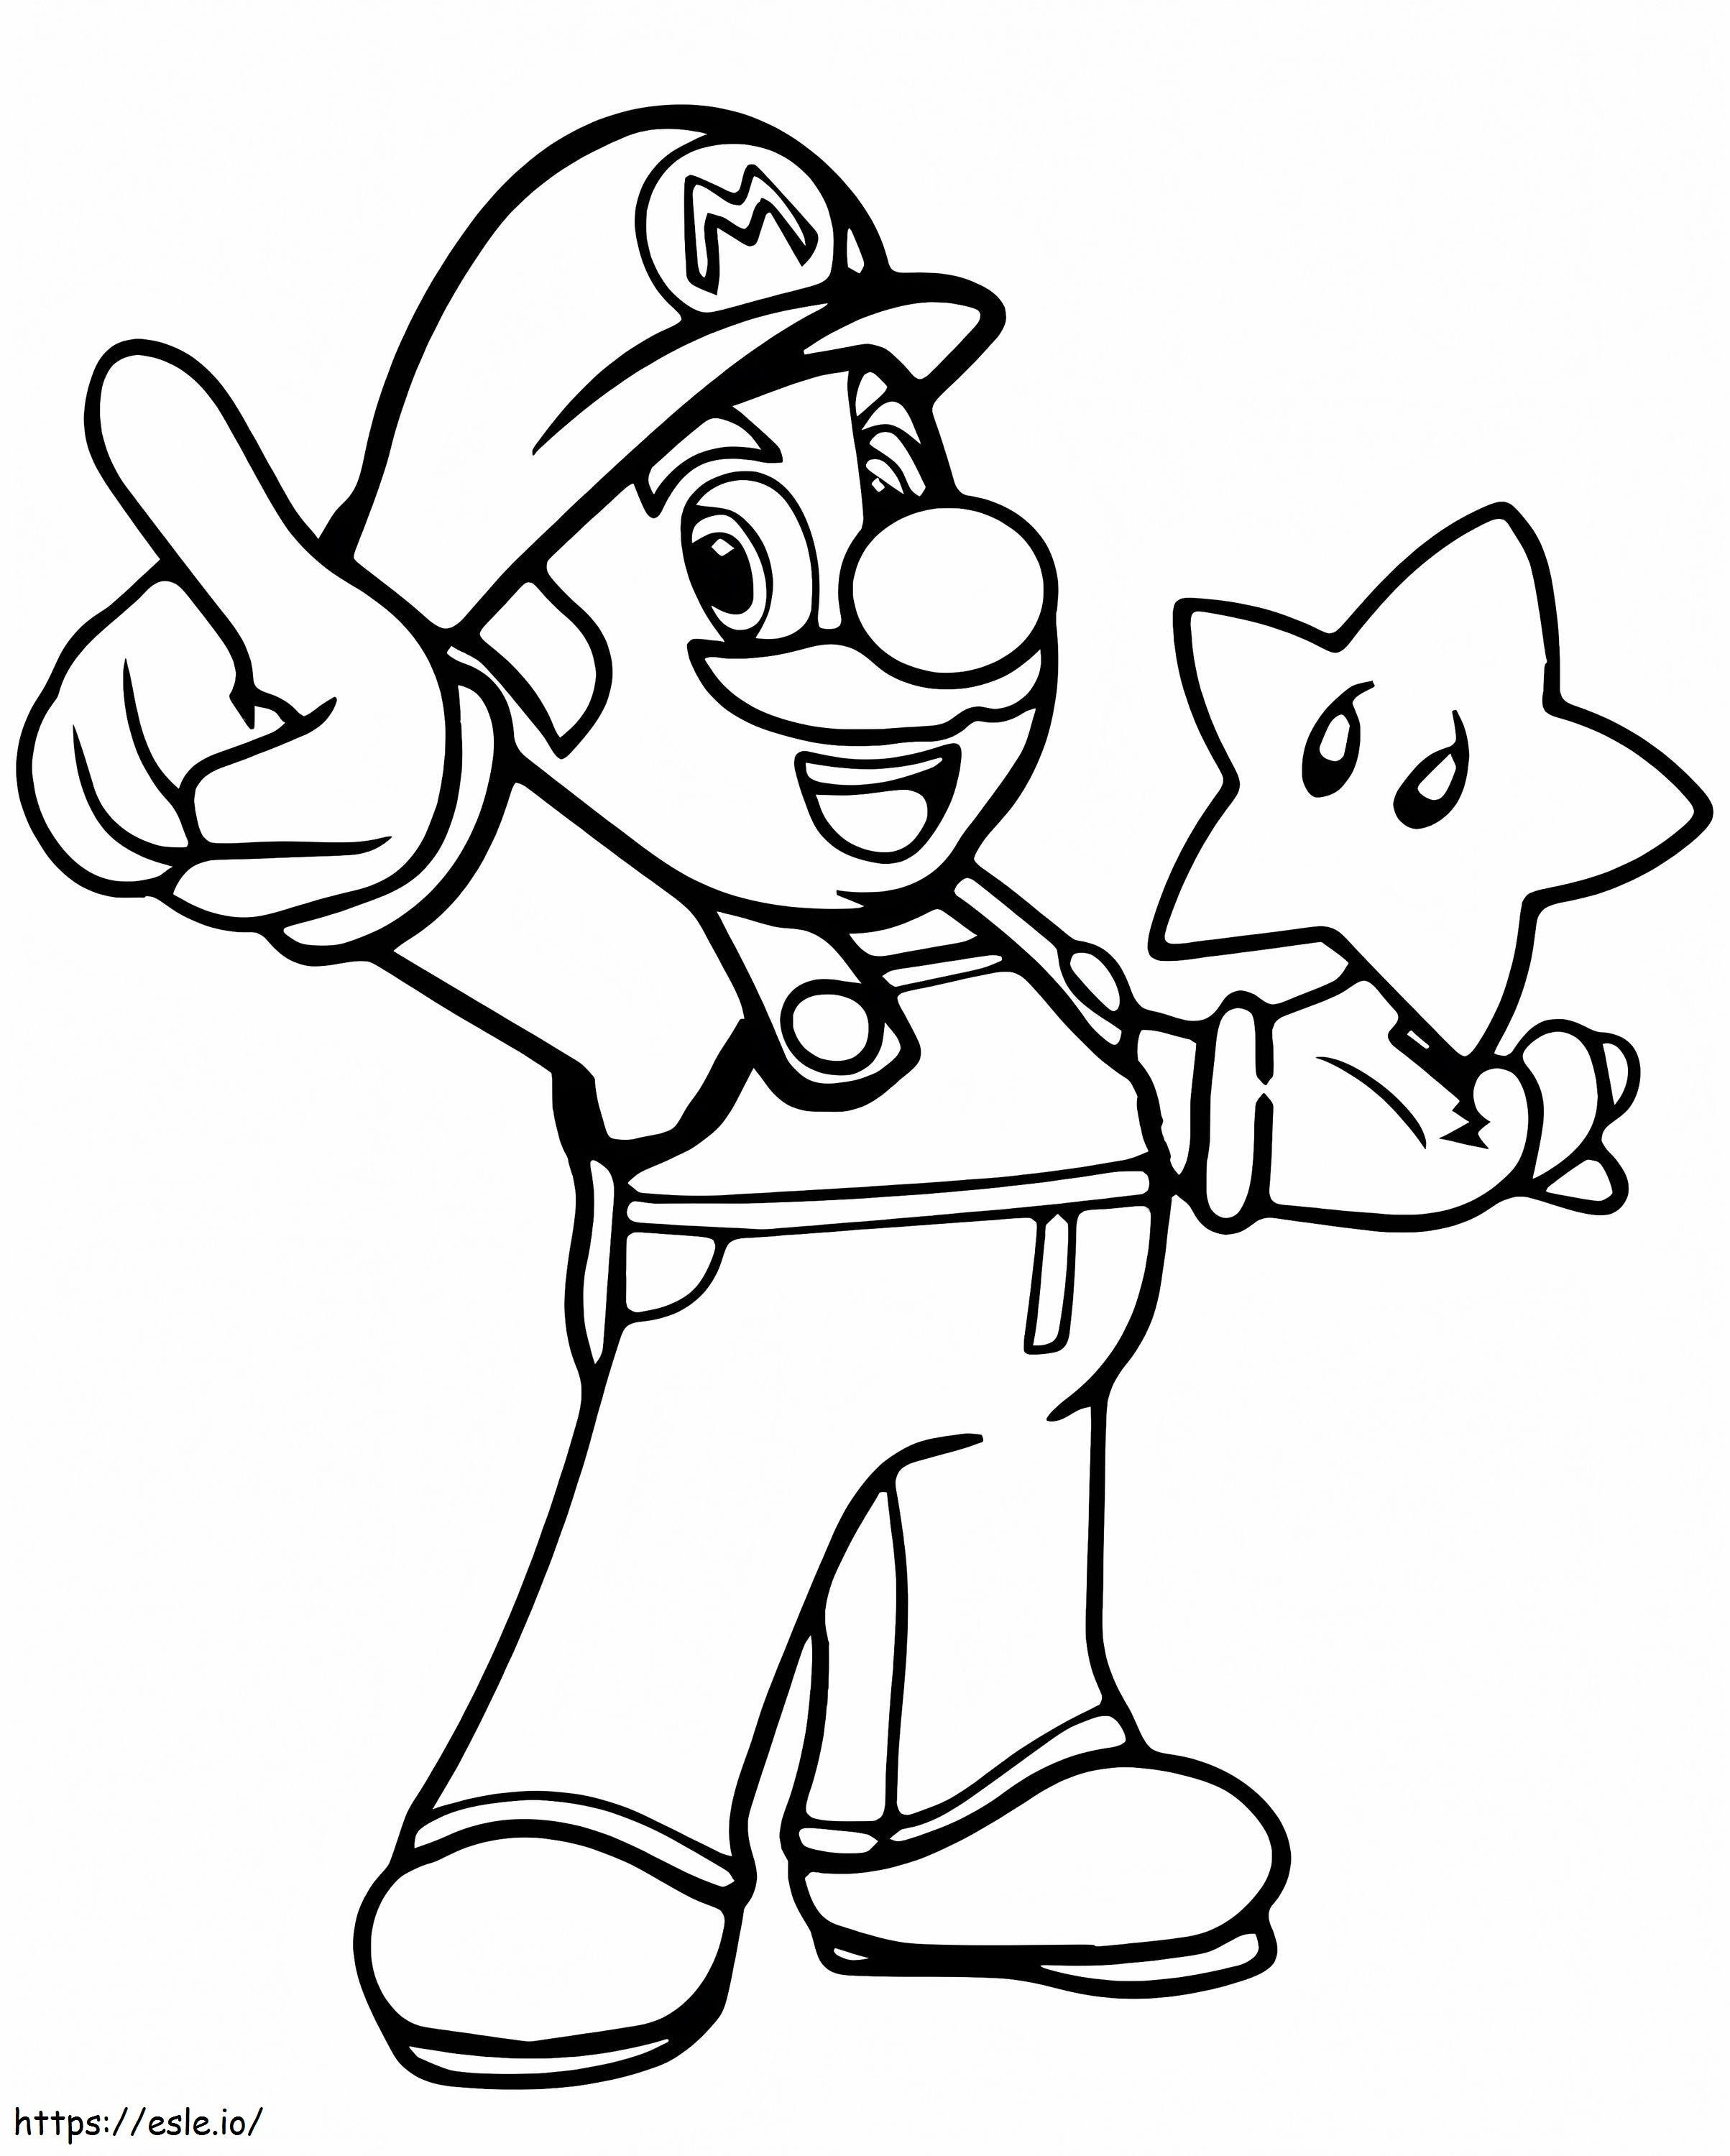 Mario i Gwiazda kolorowanka